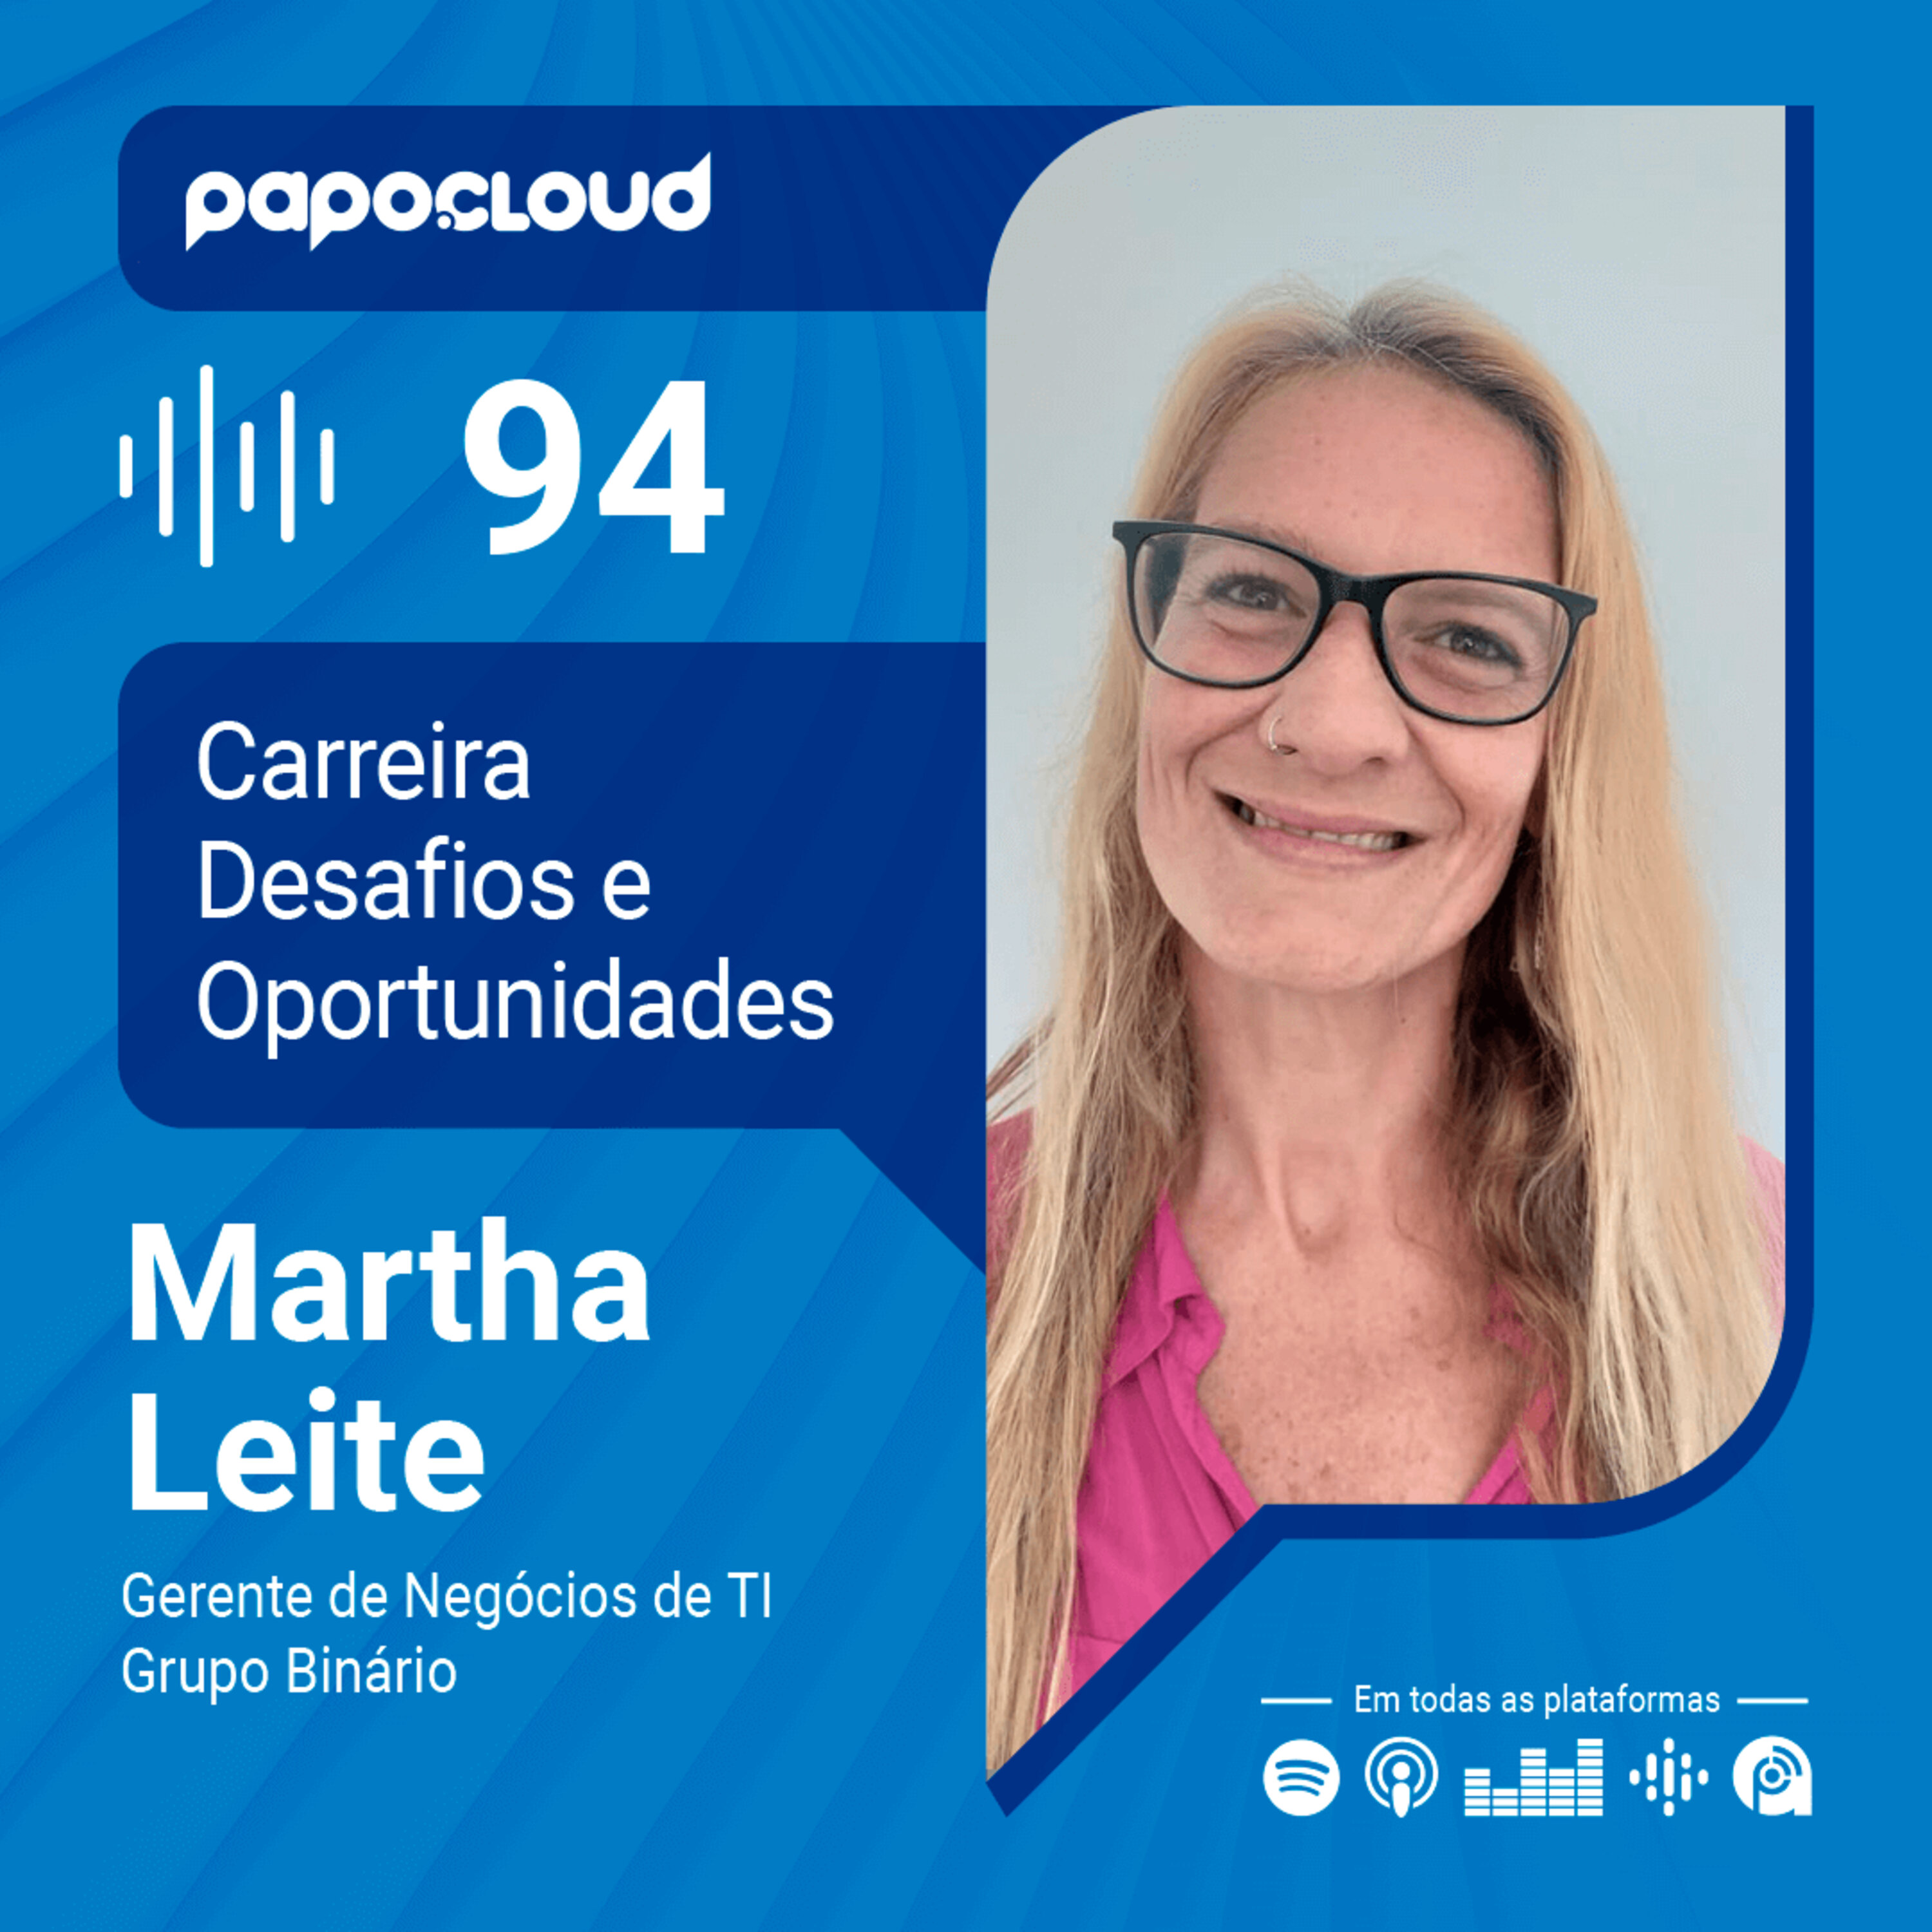 Papo Cloud 094 - Carreira e desafios mercado de TI com Martha Leite Gerente de Negócios de TI Grupo Binário